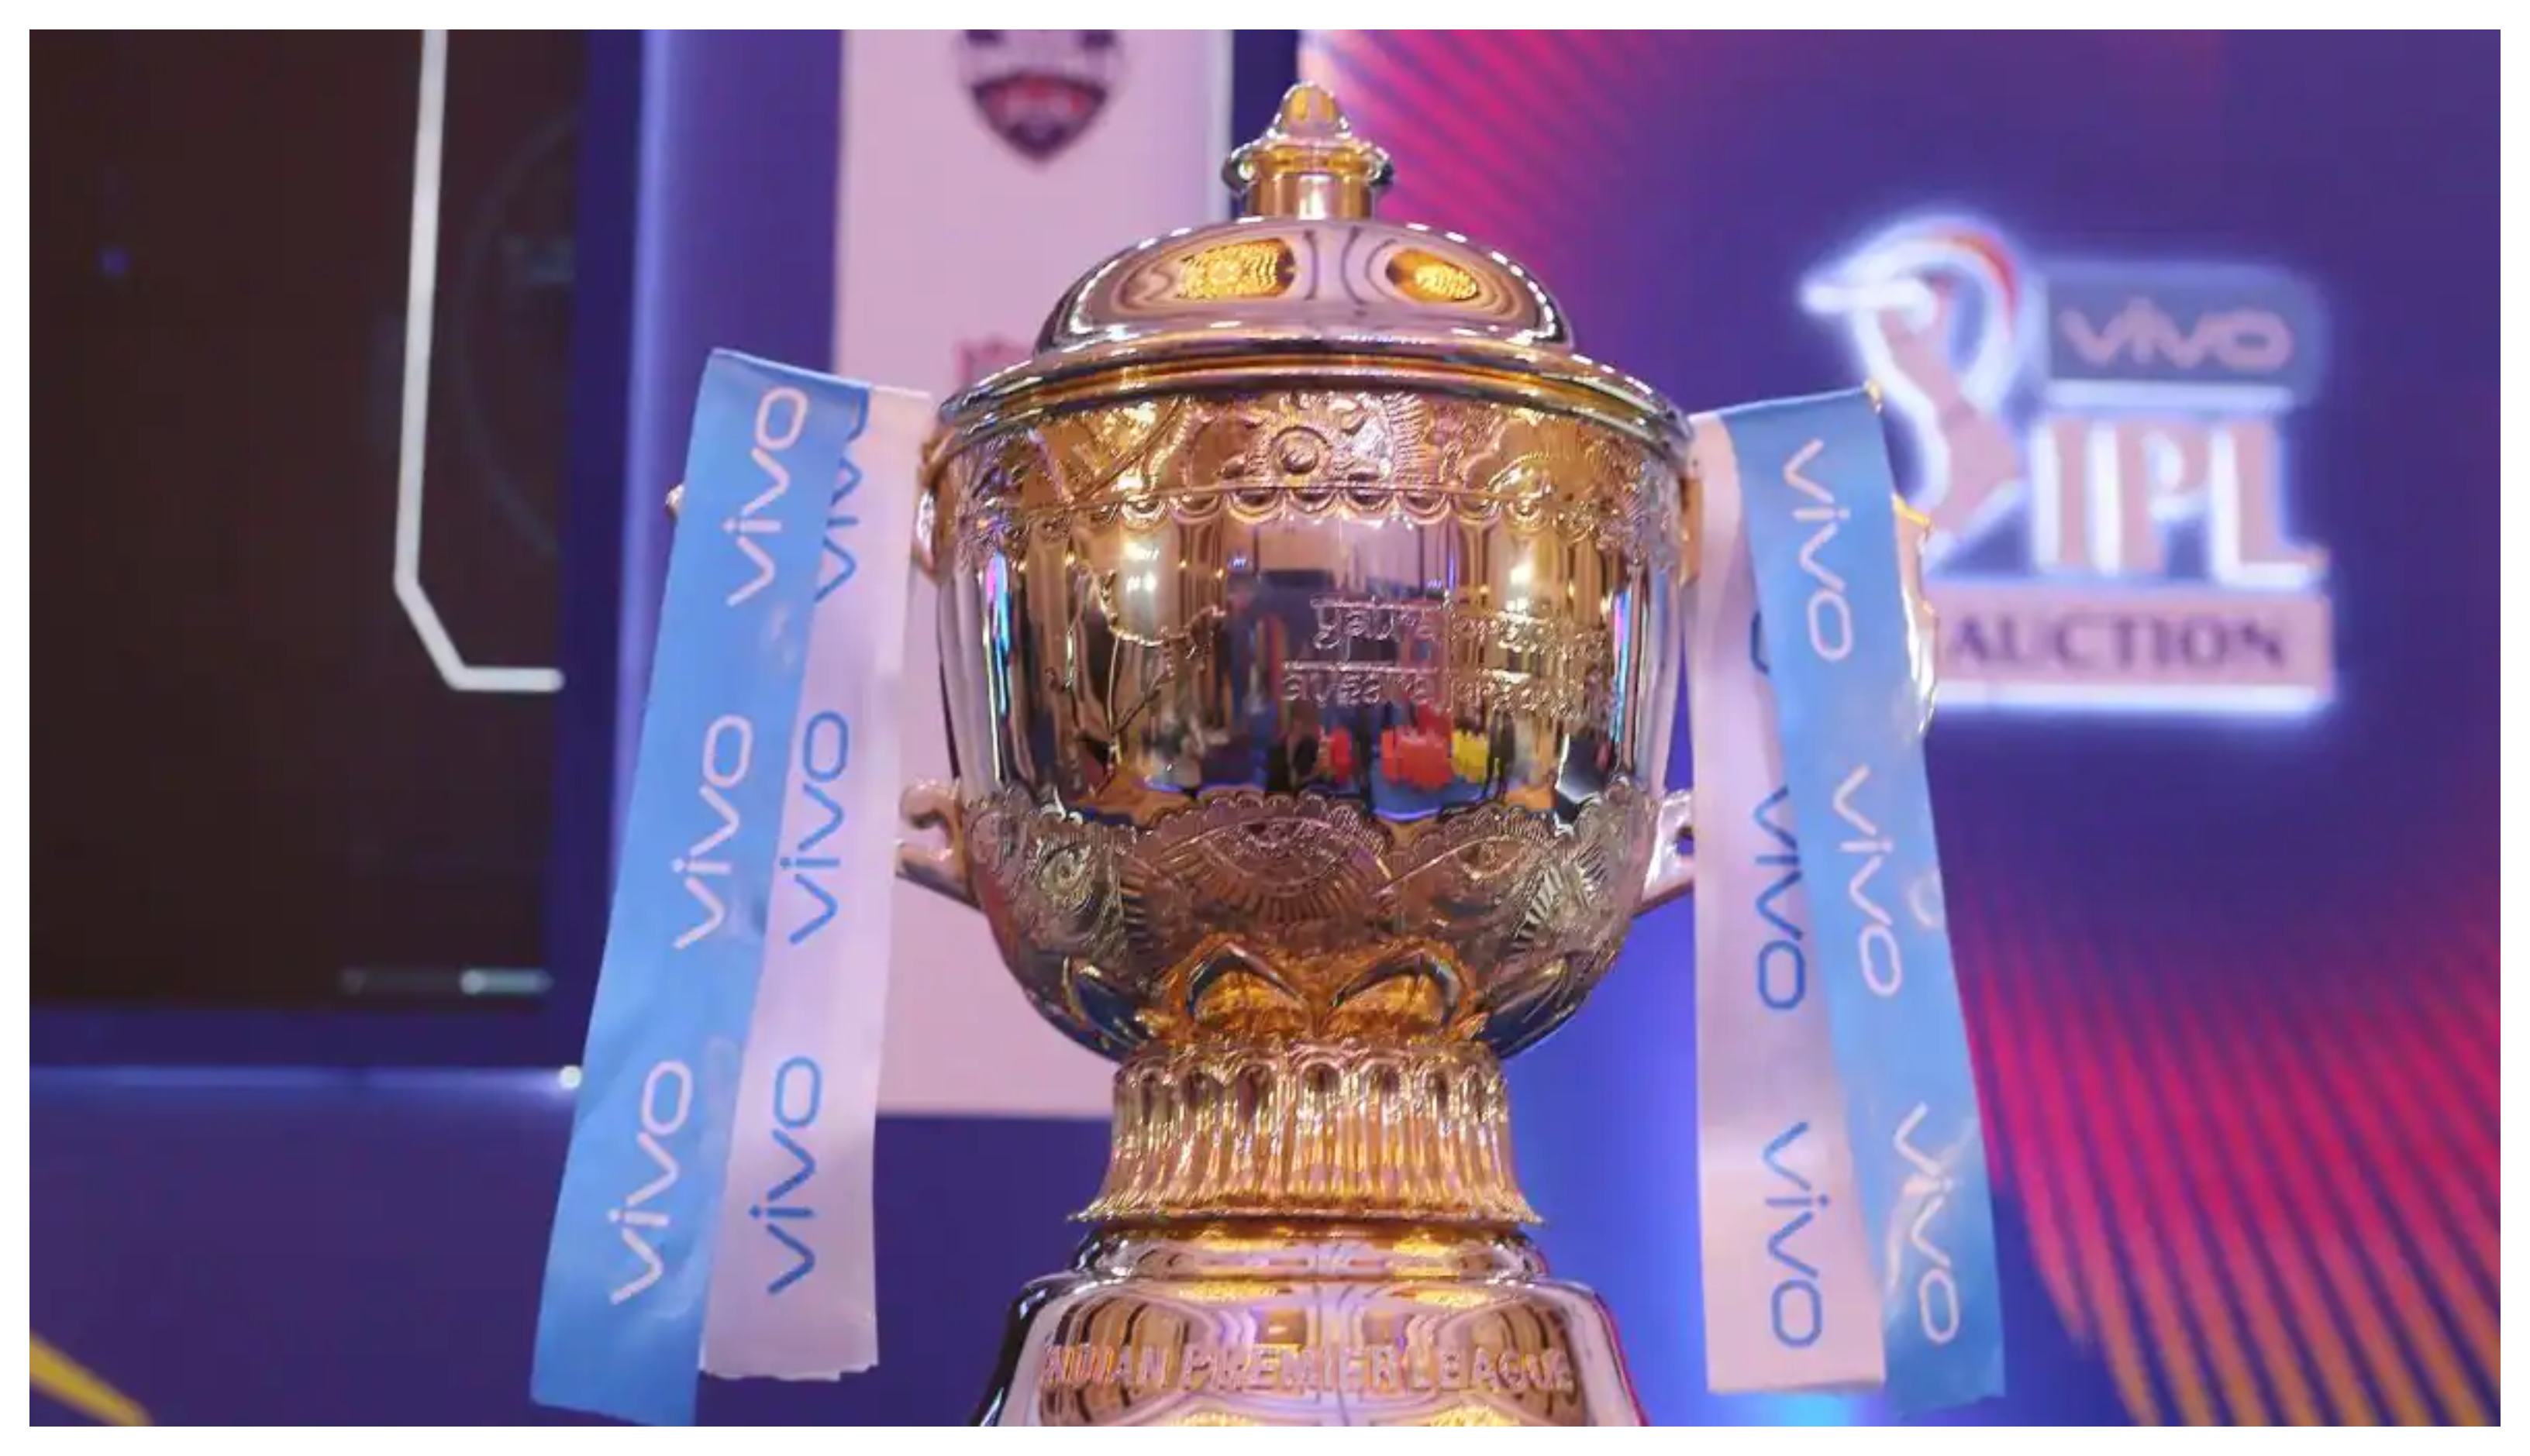 10 teams will participate in IPL 2022 | BCCI/IPL